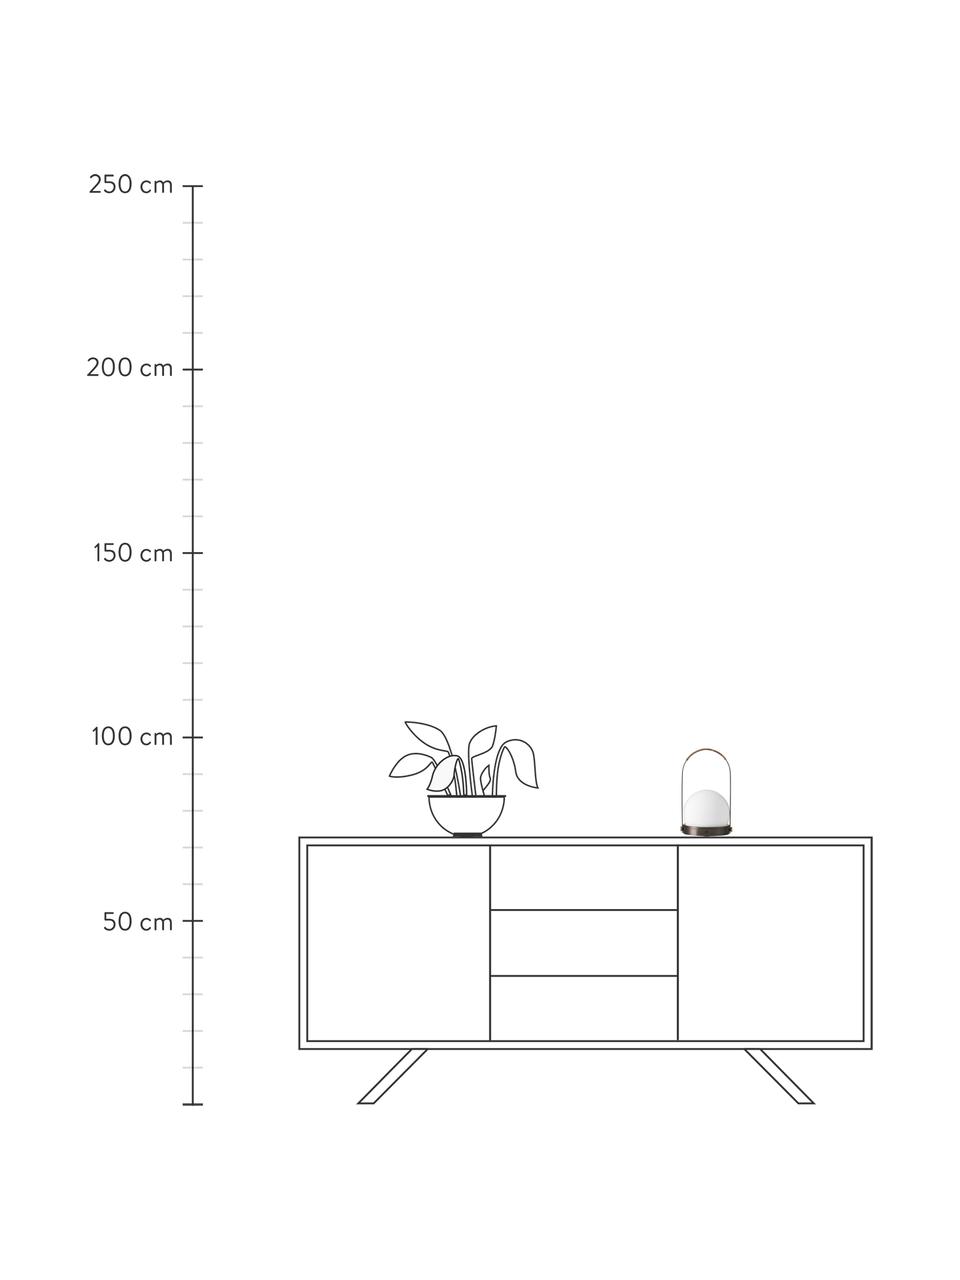 Lampa stołowa z funkcją przyciemniania Bubo, Stelaż: metal malowany proszkowo, Biały, brązowy, Ø 14 x W 24 cm